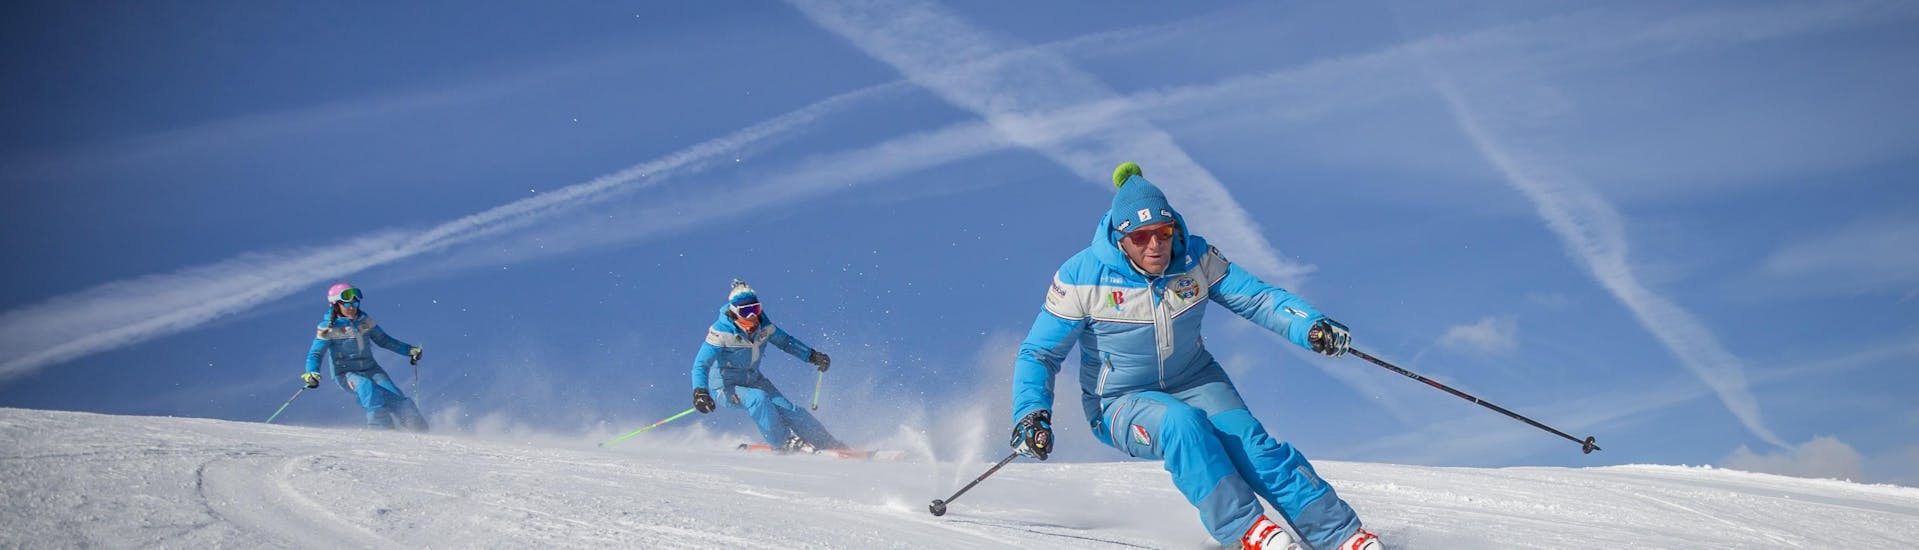 Clases de esquí privadas para adultos a partir de 13 años para todos los niveles.